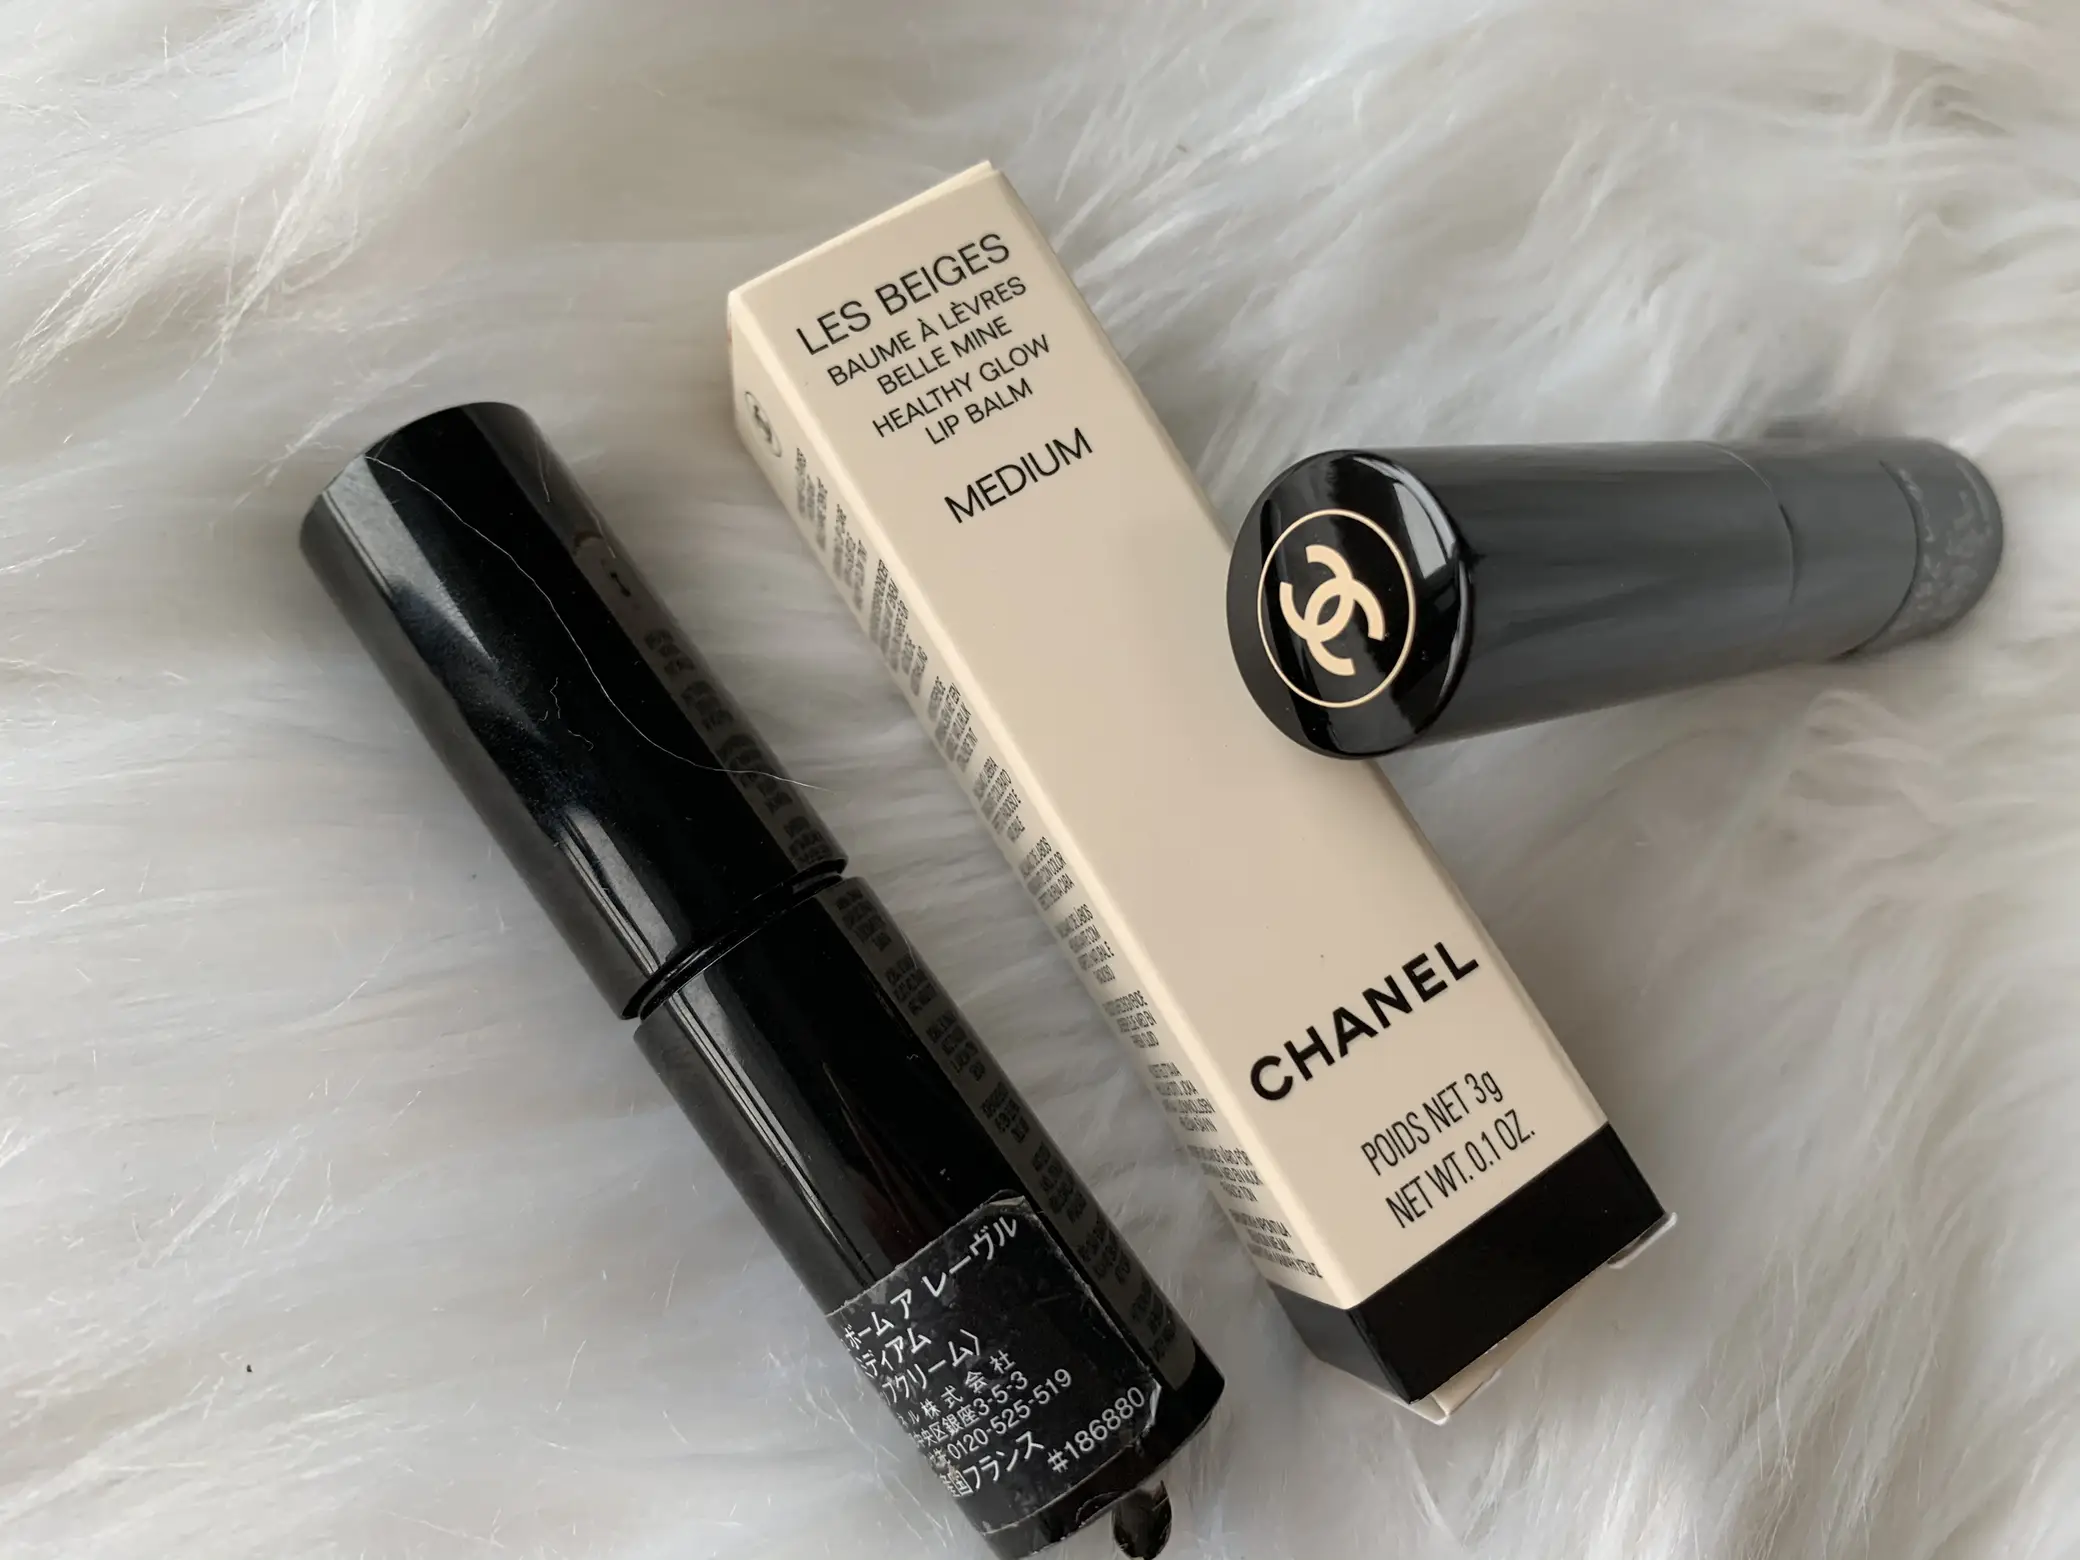 Chanel No. 1 de Chanel Lip & Cheek Balm • Blush Review & Swatches